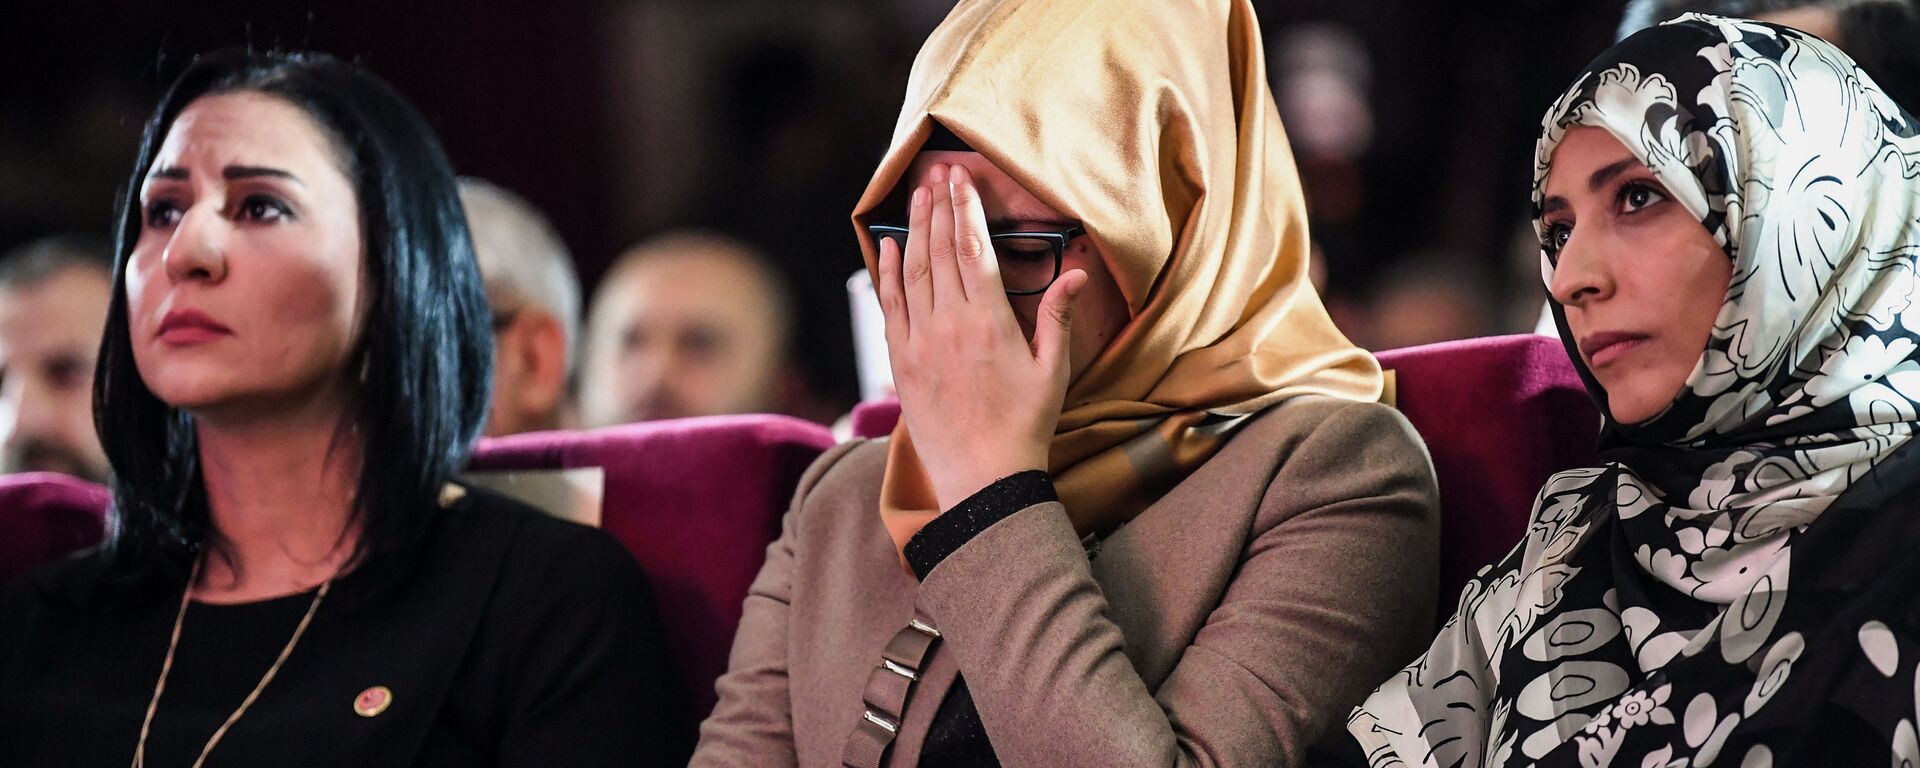  خديجة جنكيز، خطيبة الصحفي السعودي جمال خاشقجي، خلال حفل لتكريم الصحفي خاشقجي، 11 نوفمبر /تشرين الثاني 2018 - سبوتنيك عربي, 1920, 07.12.2021